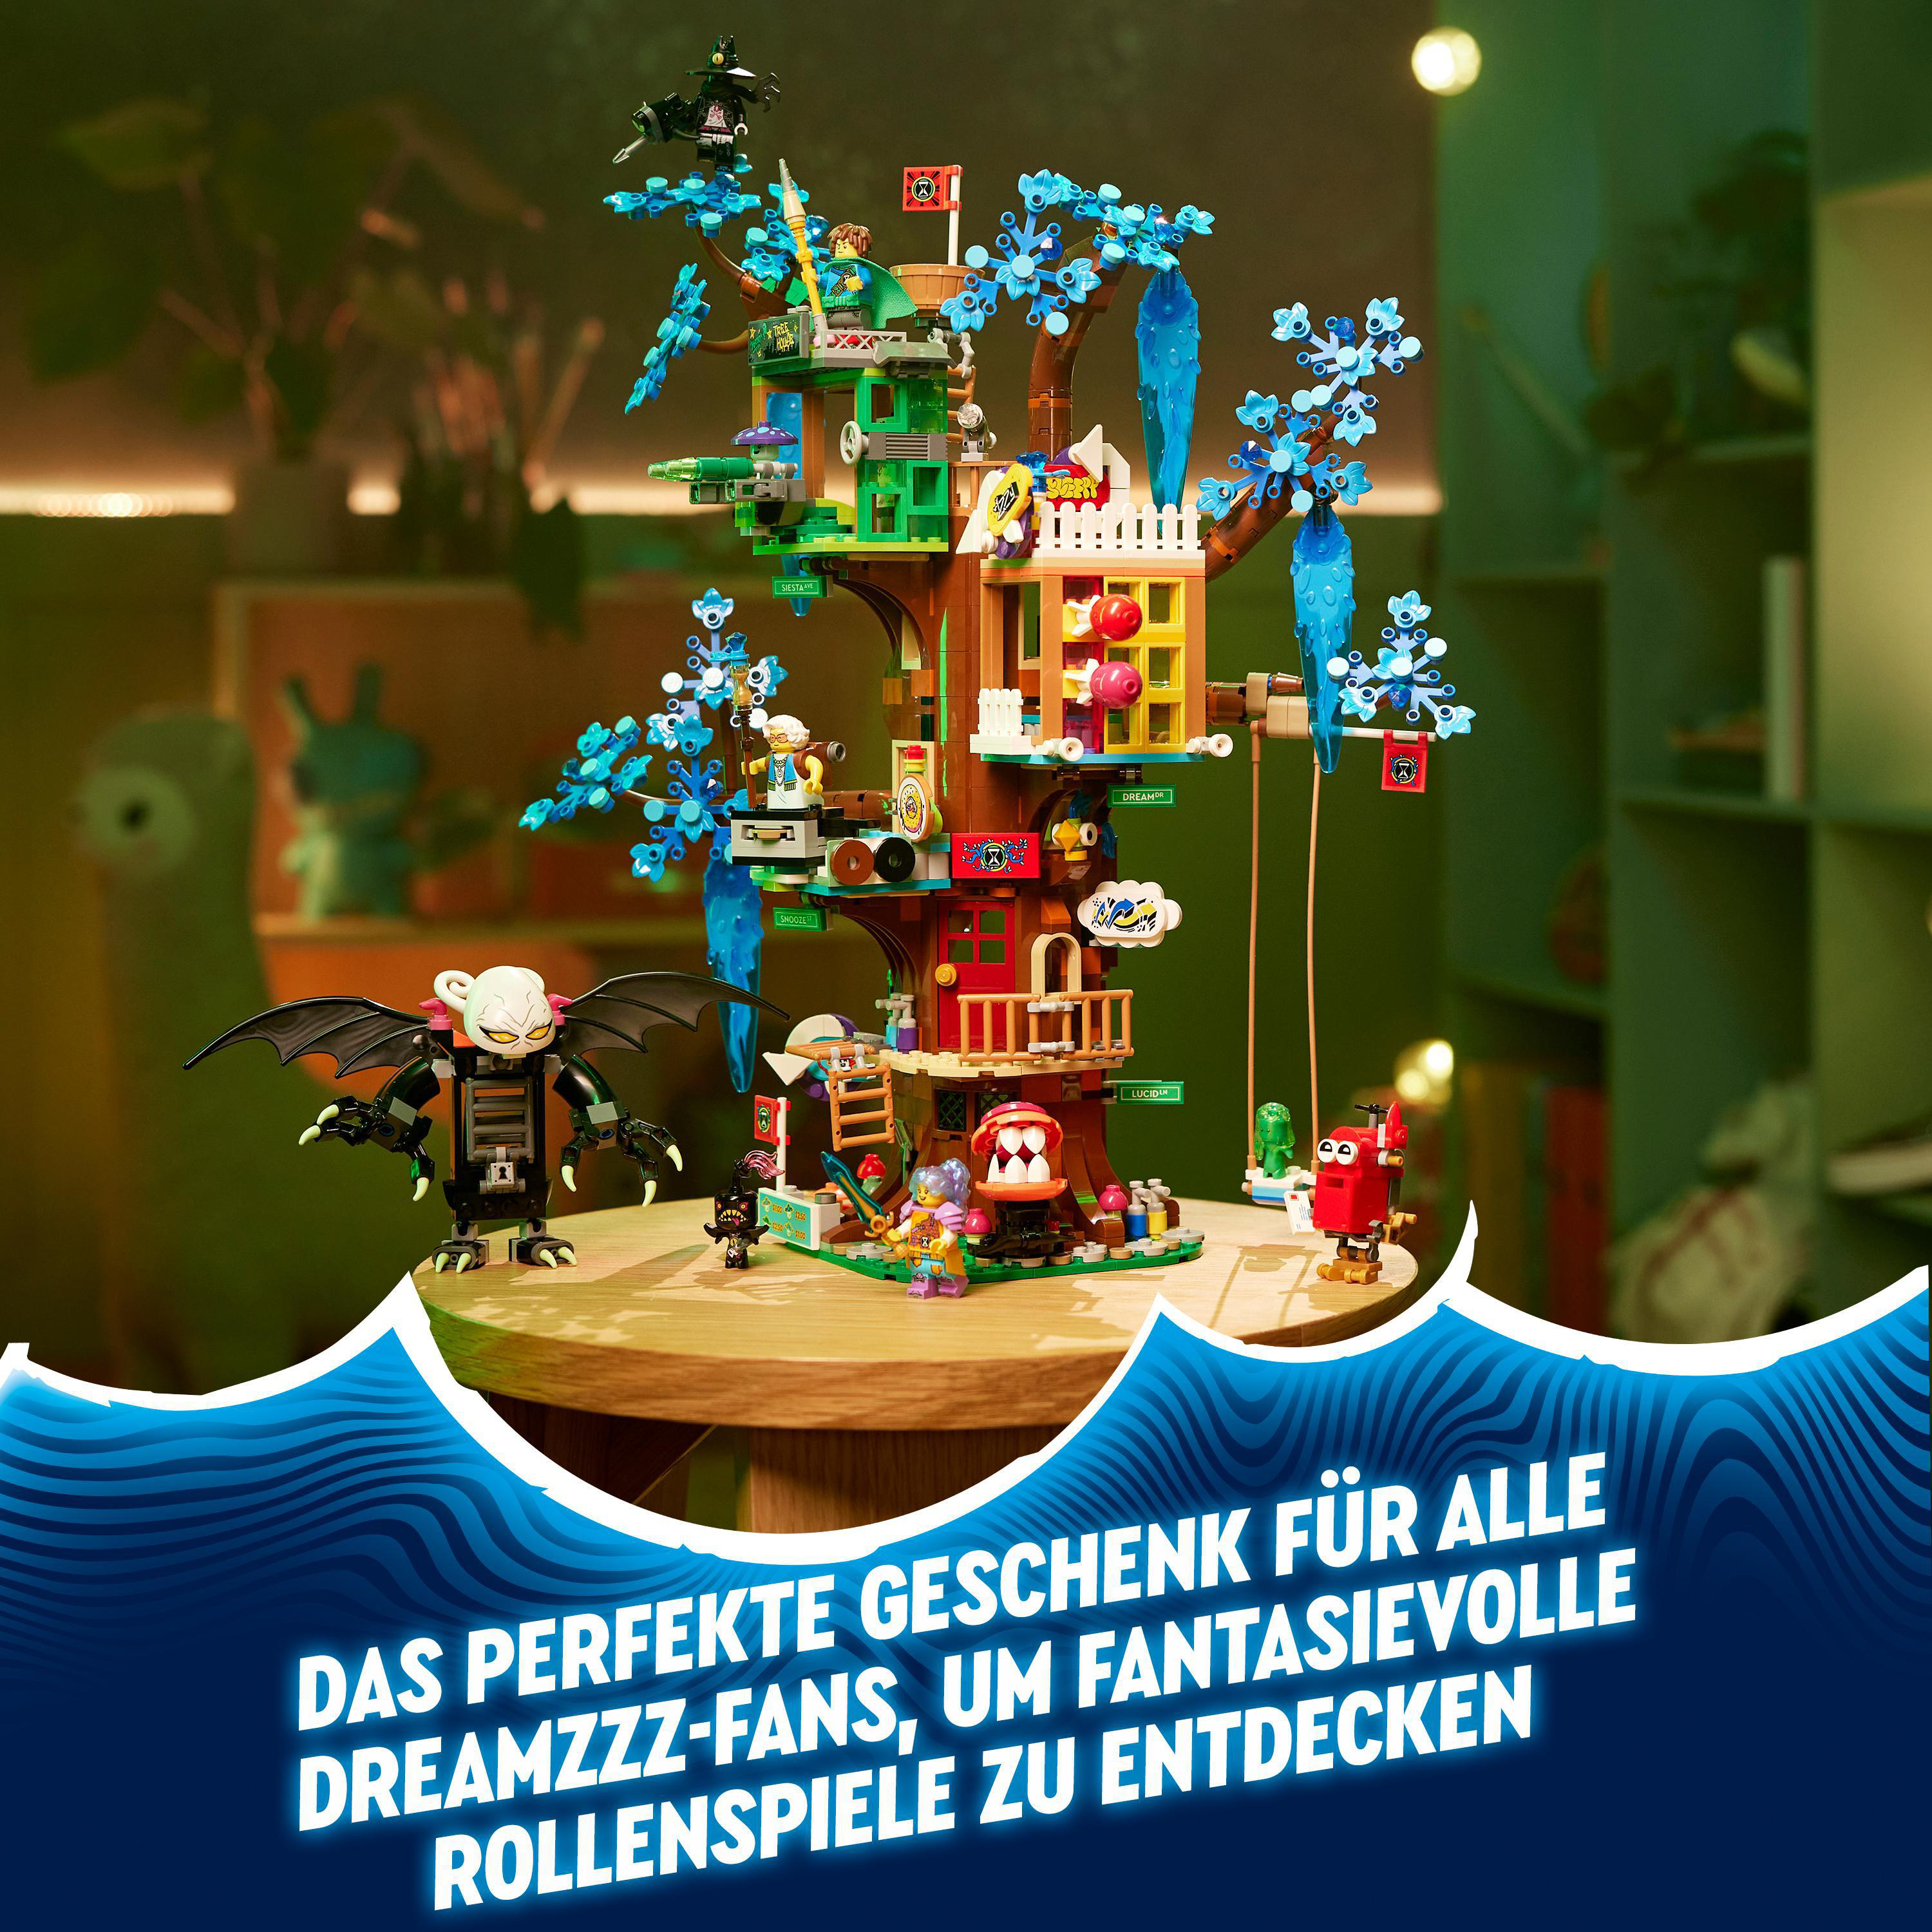 LEGO 71461 Bausatz, Fantastisches Baumhaus Mehrfarbig DREAMZzz